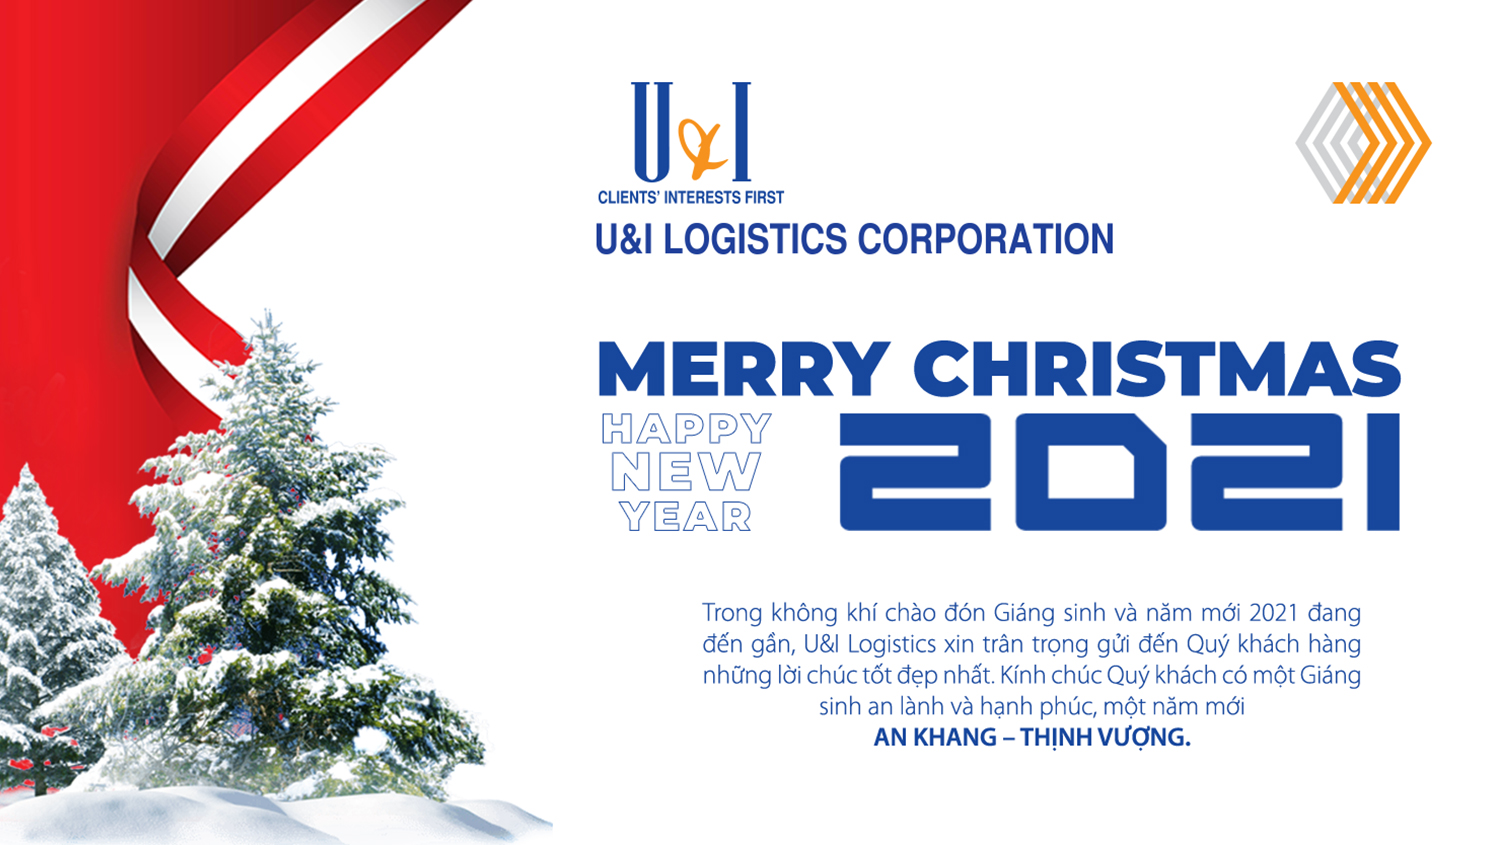 Merry christmas 2021 - Công ty Cổ phần Logistics U&I